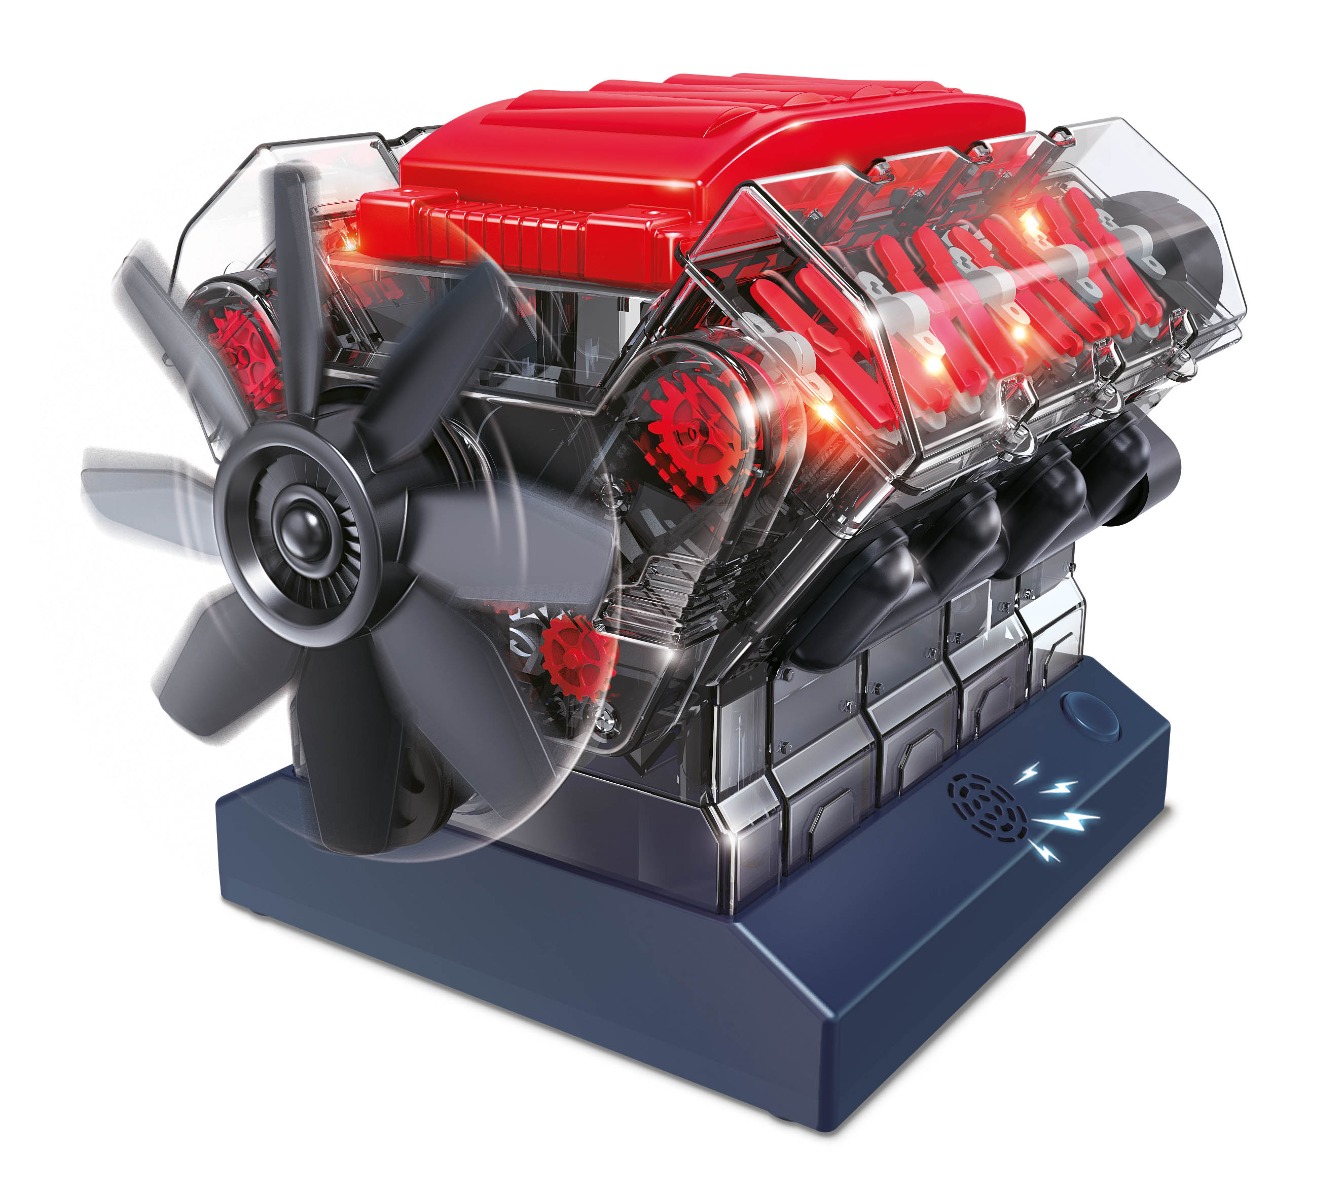 Vedecká stavebnica Motor V8